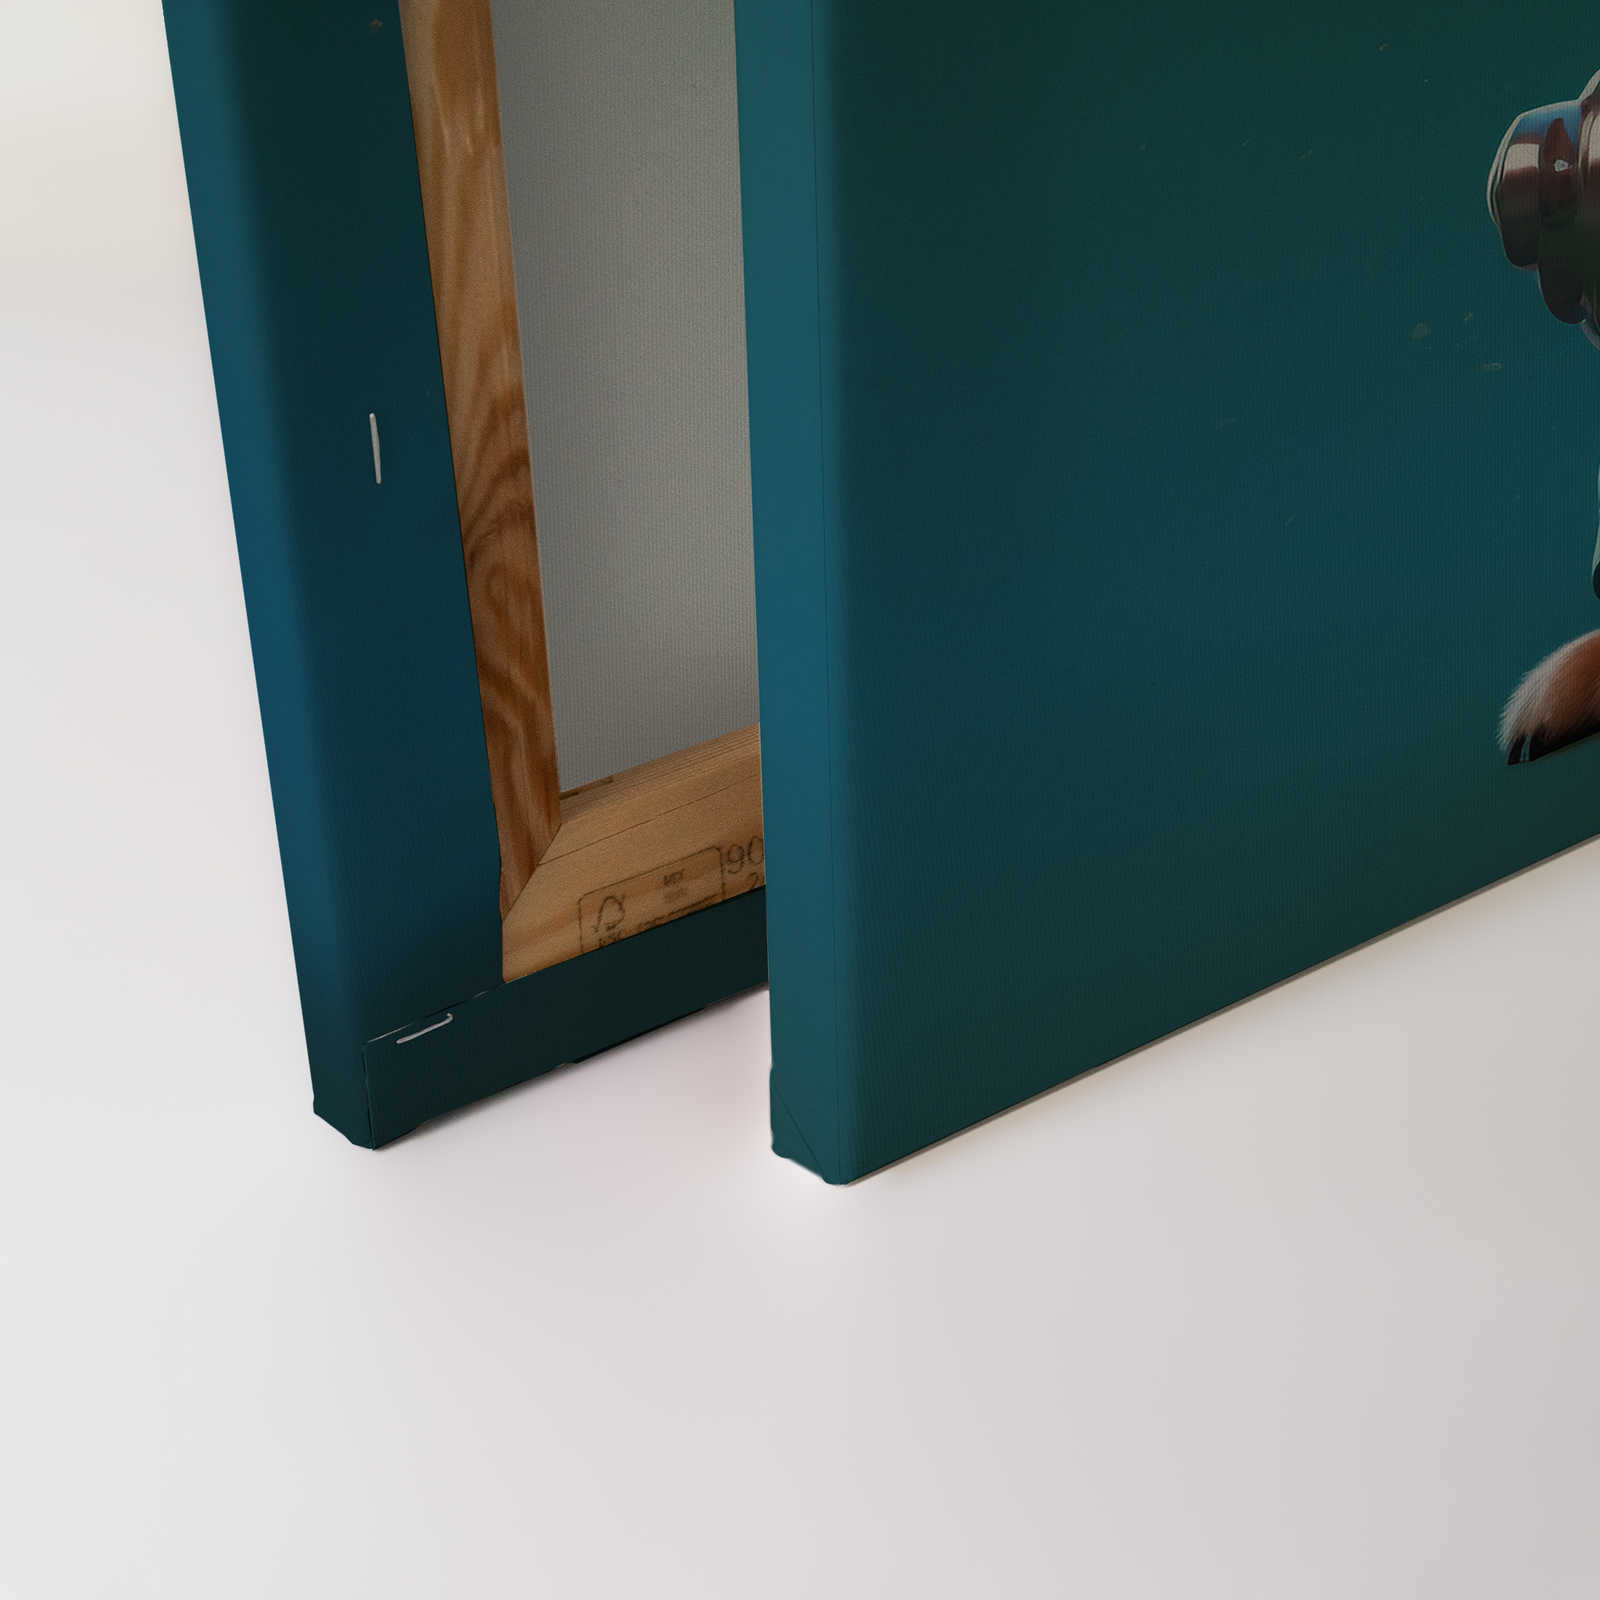             KI-Leinwandbild »Cute Dogs« – 120 cm x 80 cm
        